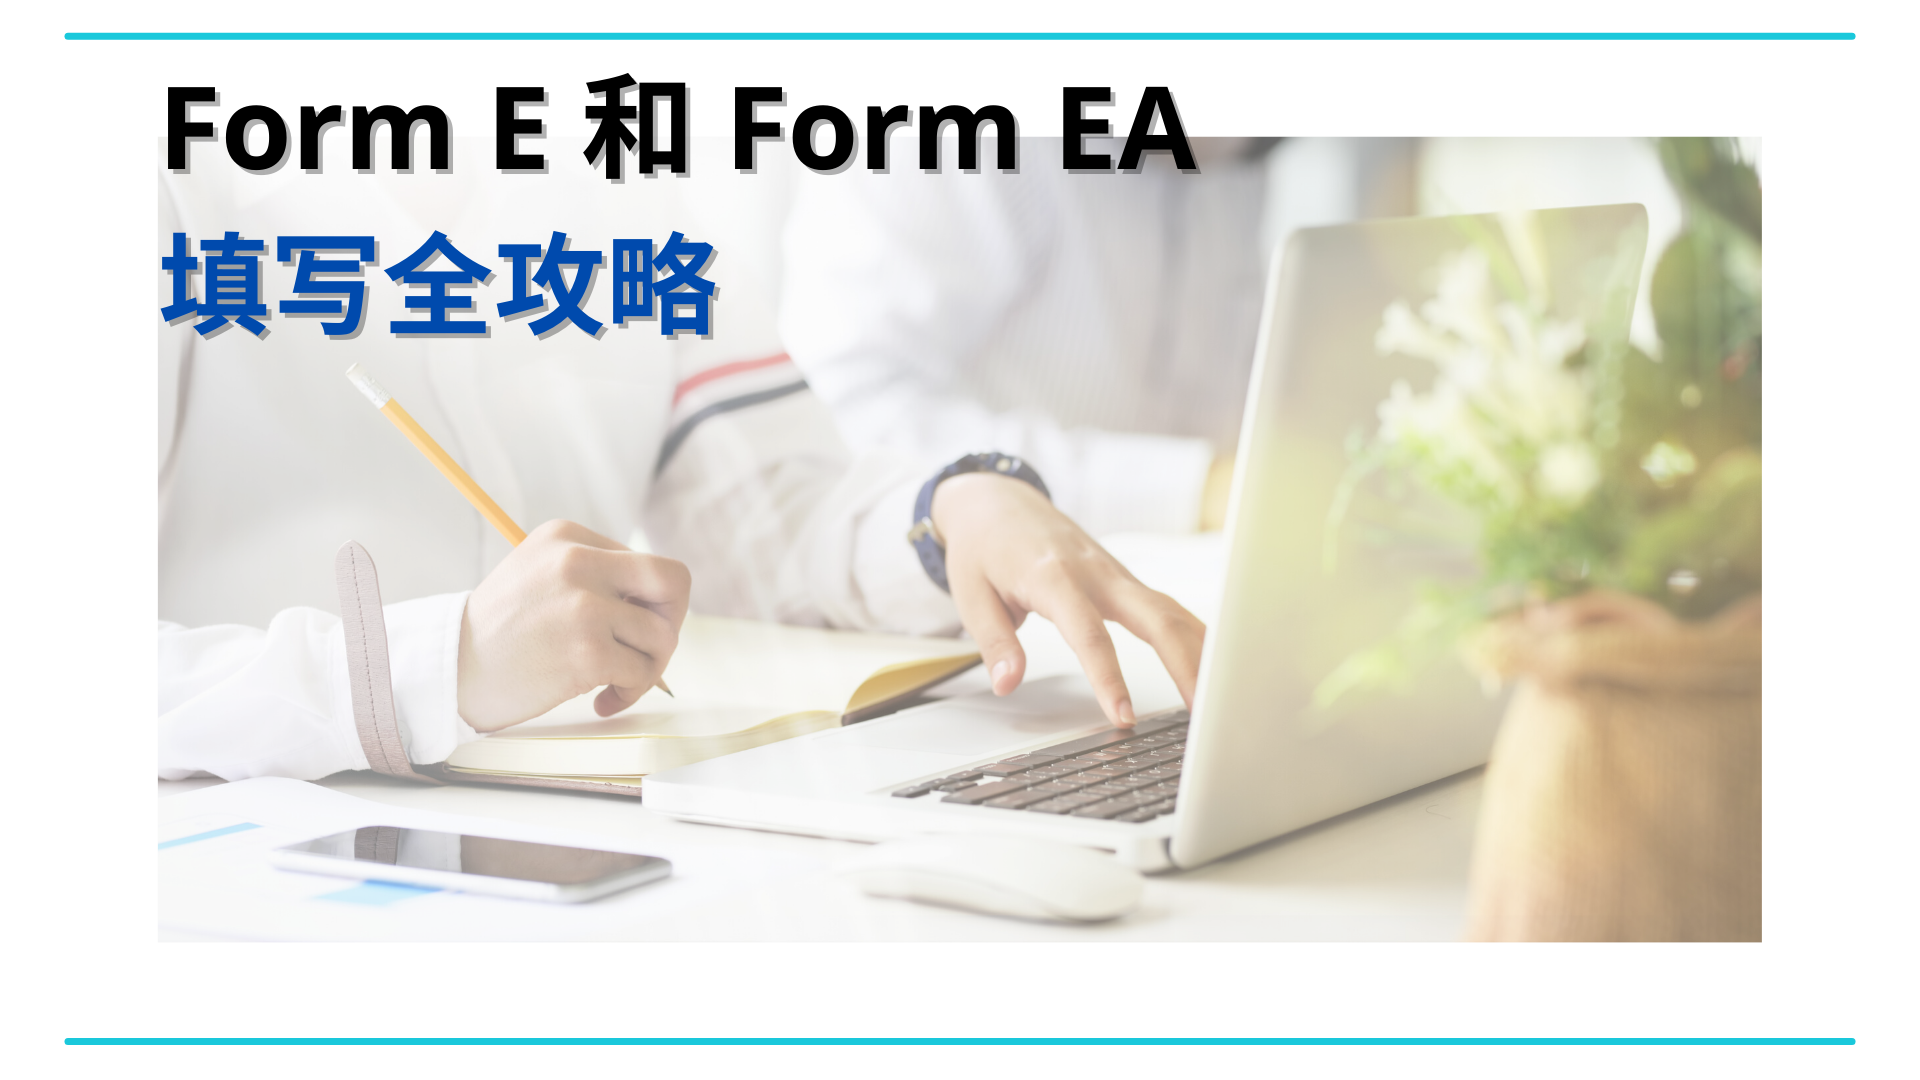 Form-E-Form-EA-1920-x-1080-px-.png